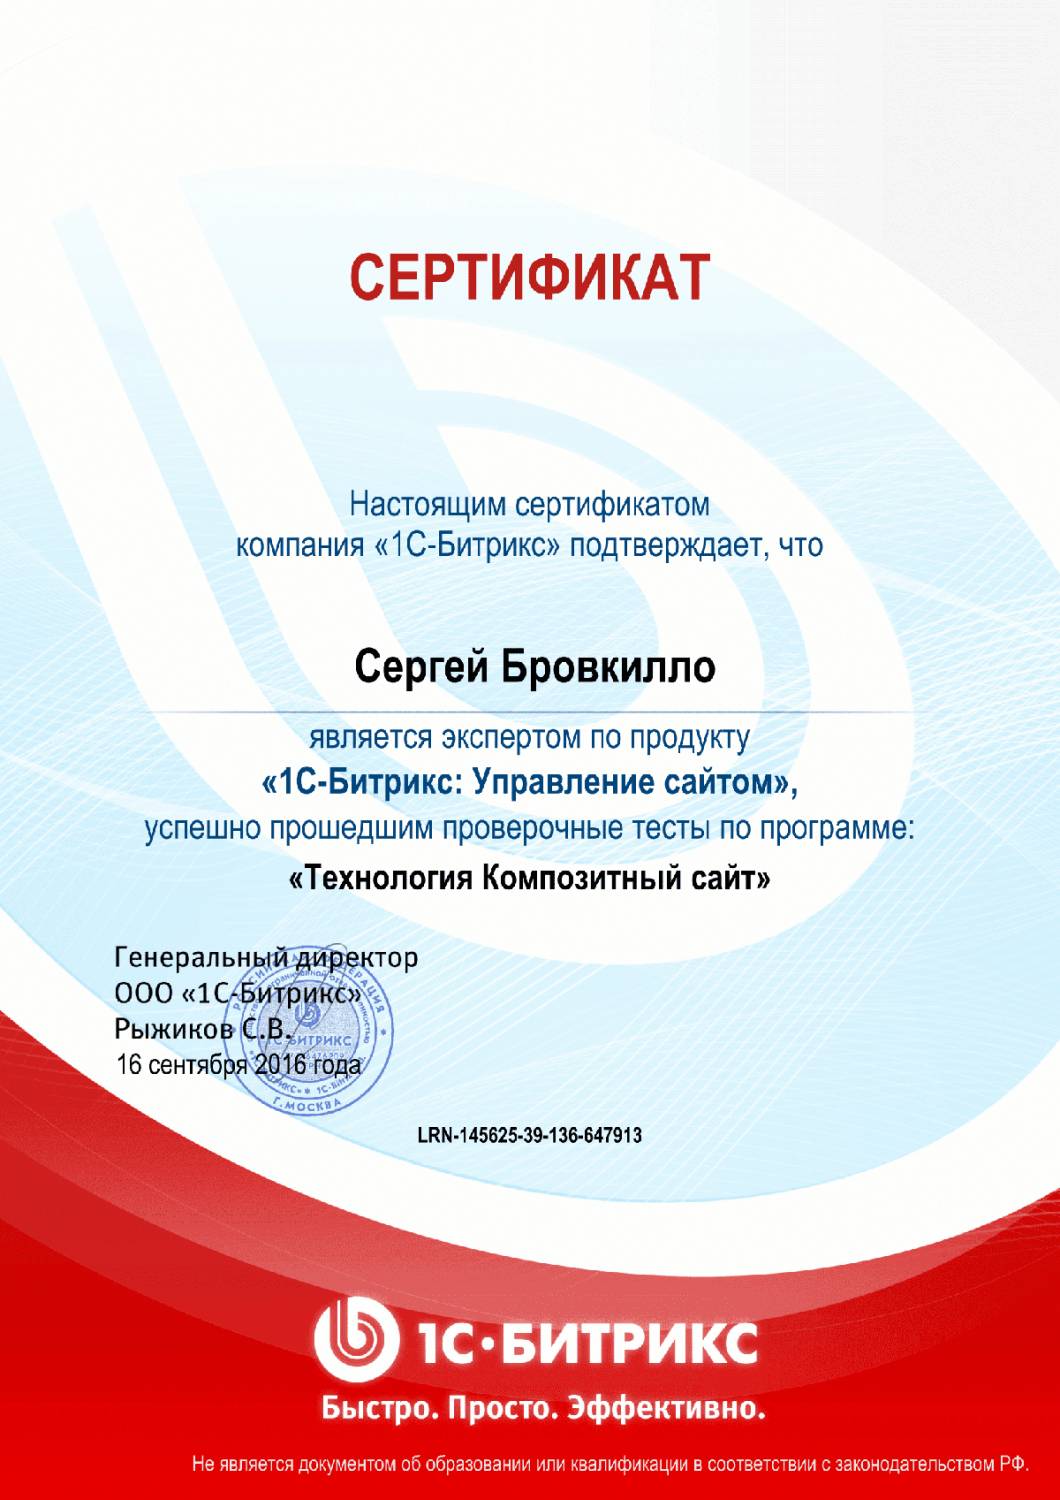 Сертификат "Технология Композитный сайт" в Барнаула